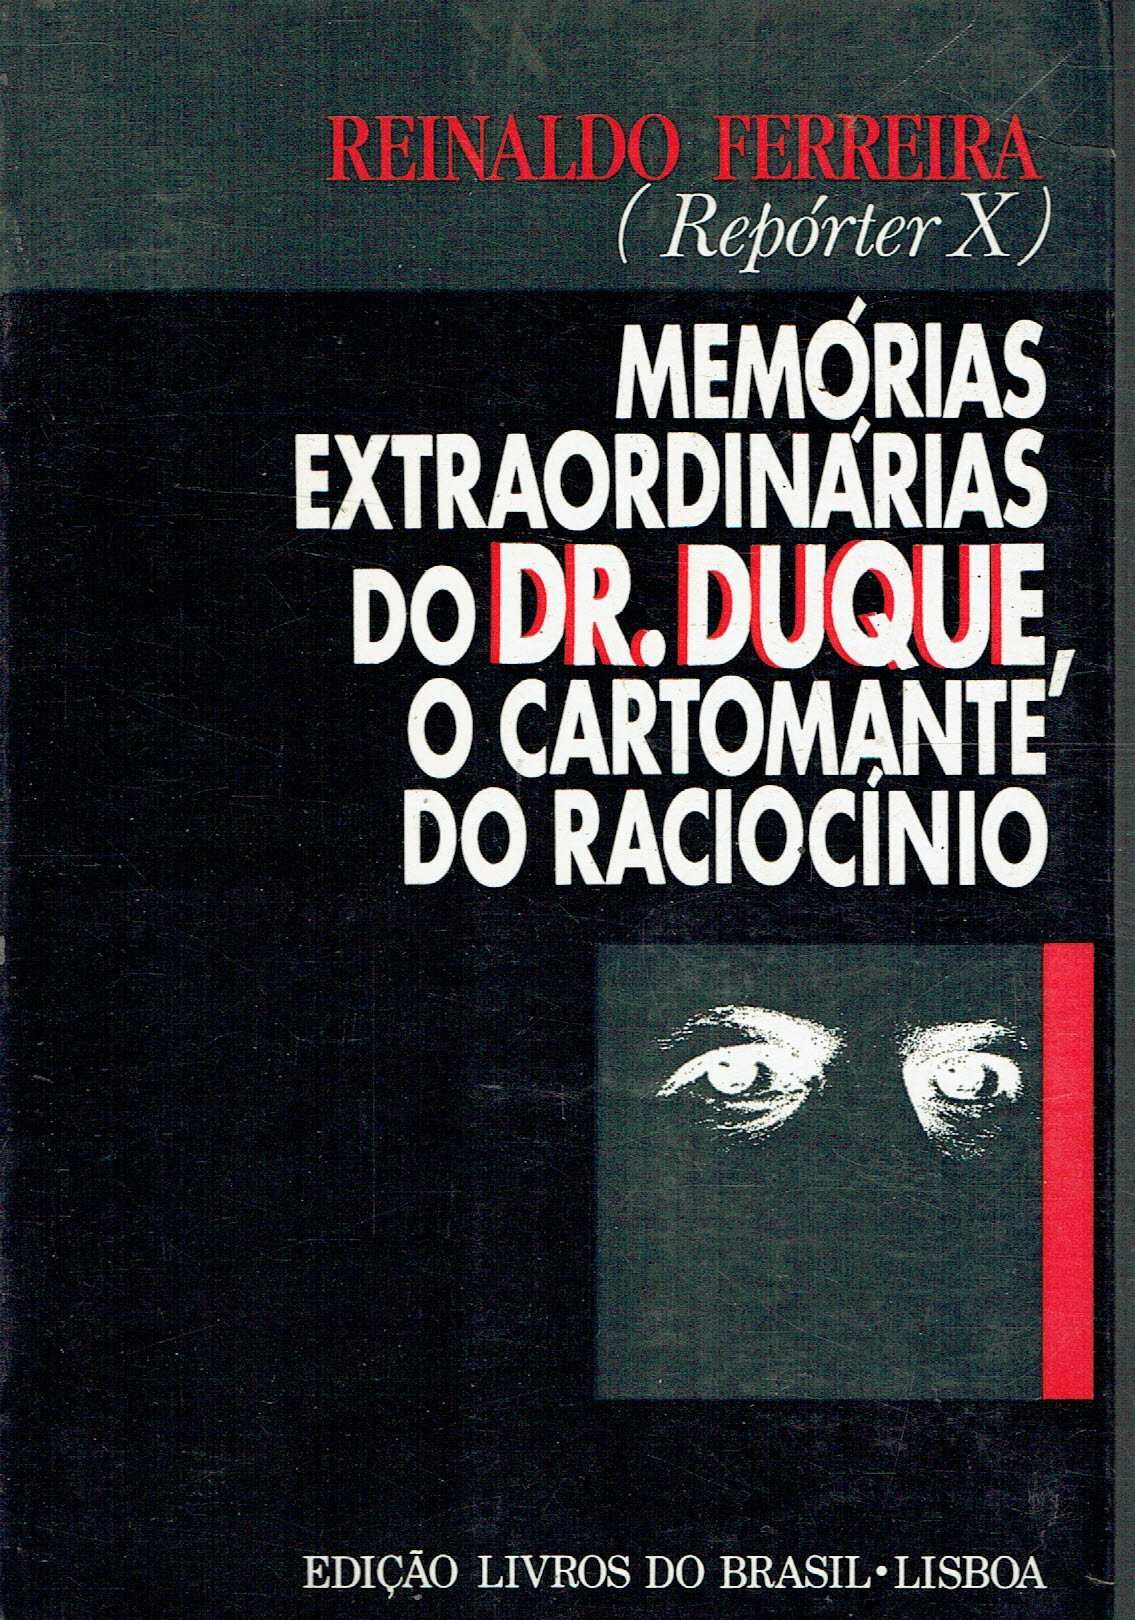 14231

Livros de Reinaldo Ferreira